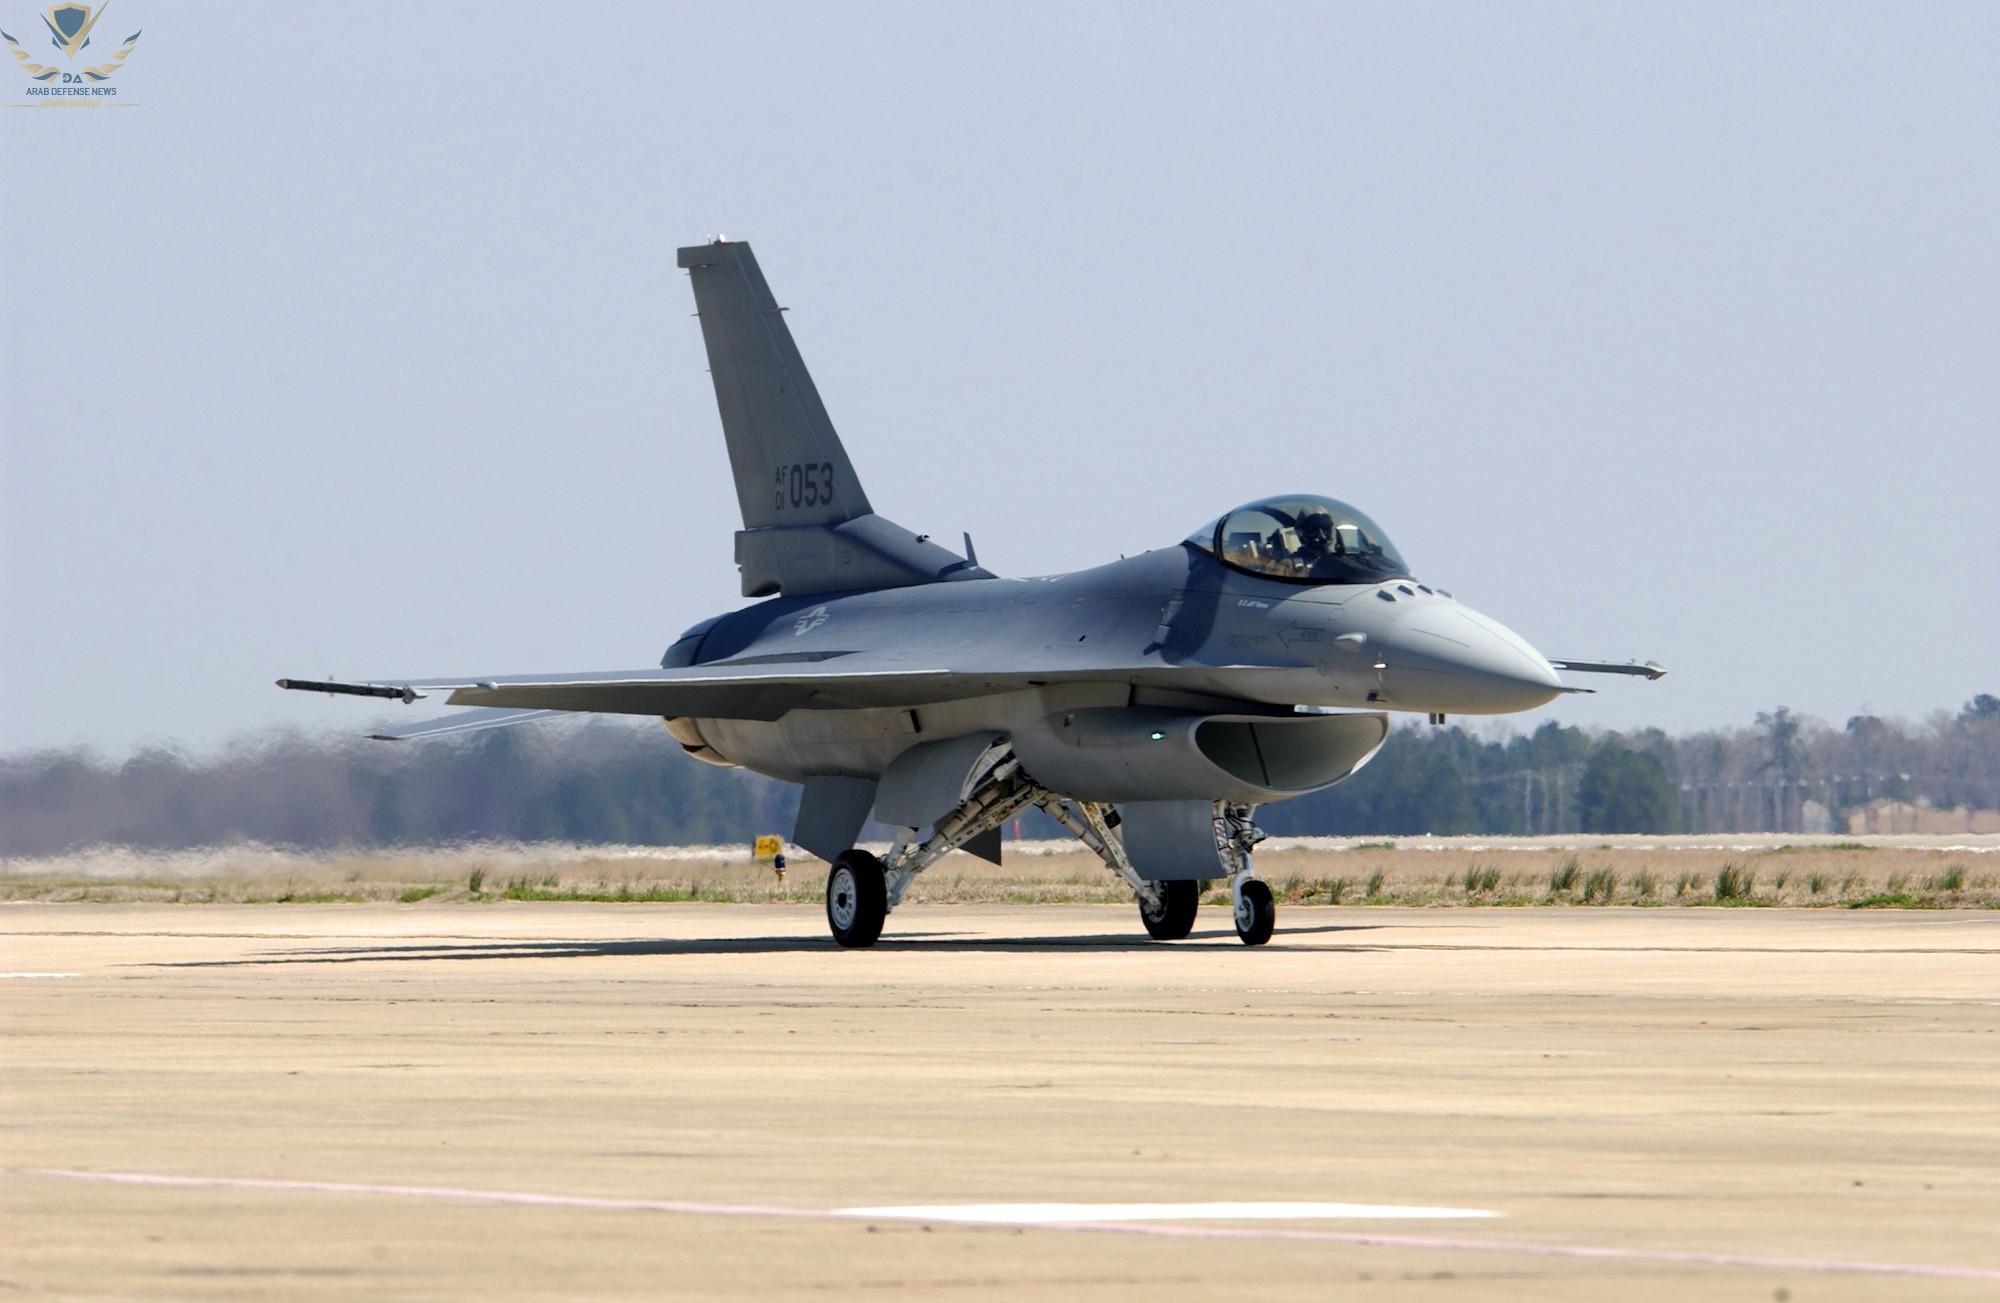 الطيارون الأوكرانيون يبدأون تحليق بطائرة F-16 في الدنمارك بعد التدريب في بريطانيا